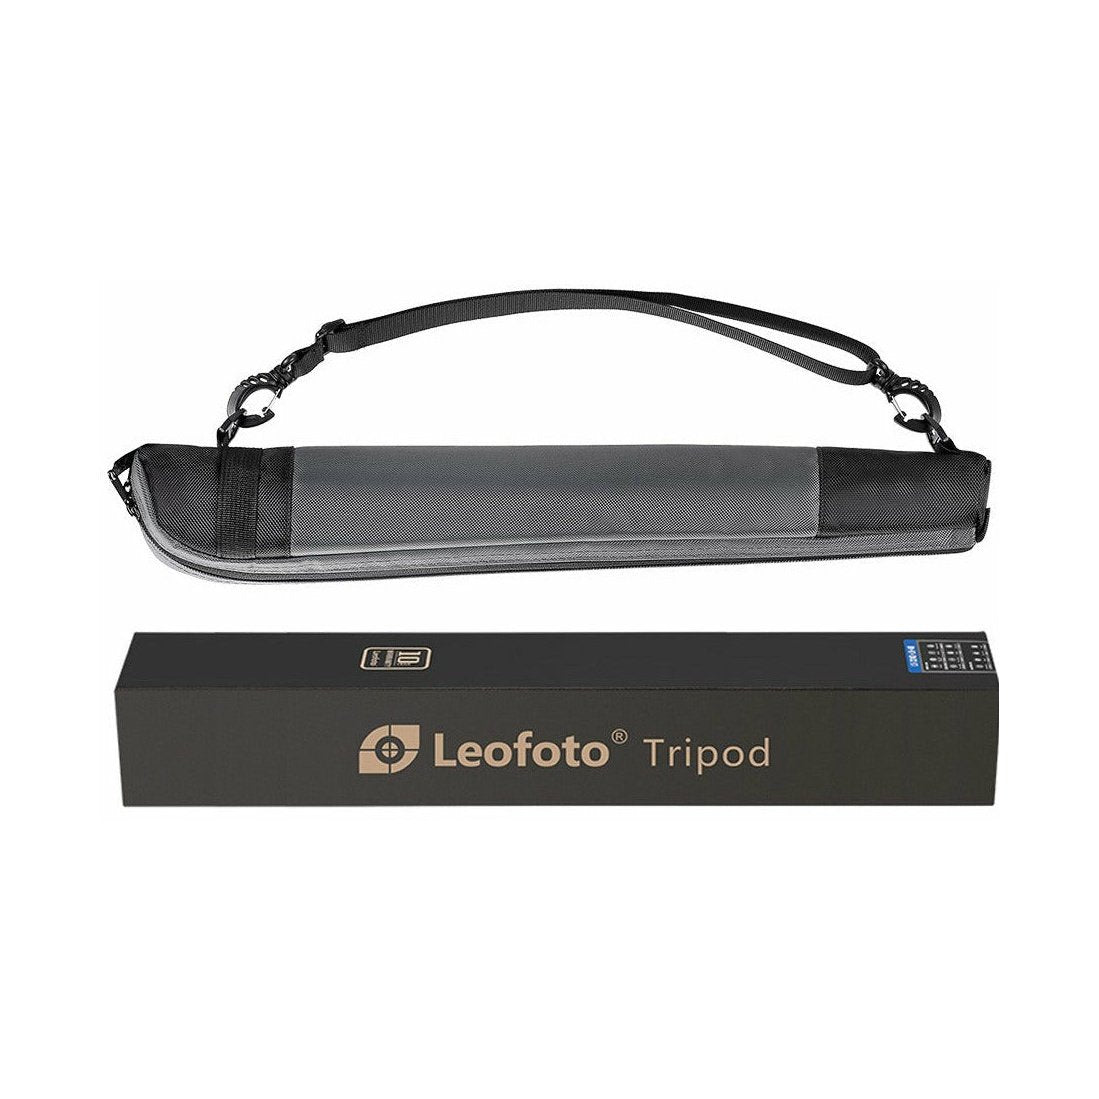 Leofoto MP-284C 4-Section Carbon Fiber Monopod leofoto-india